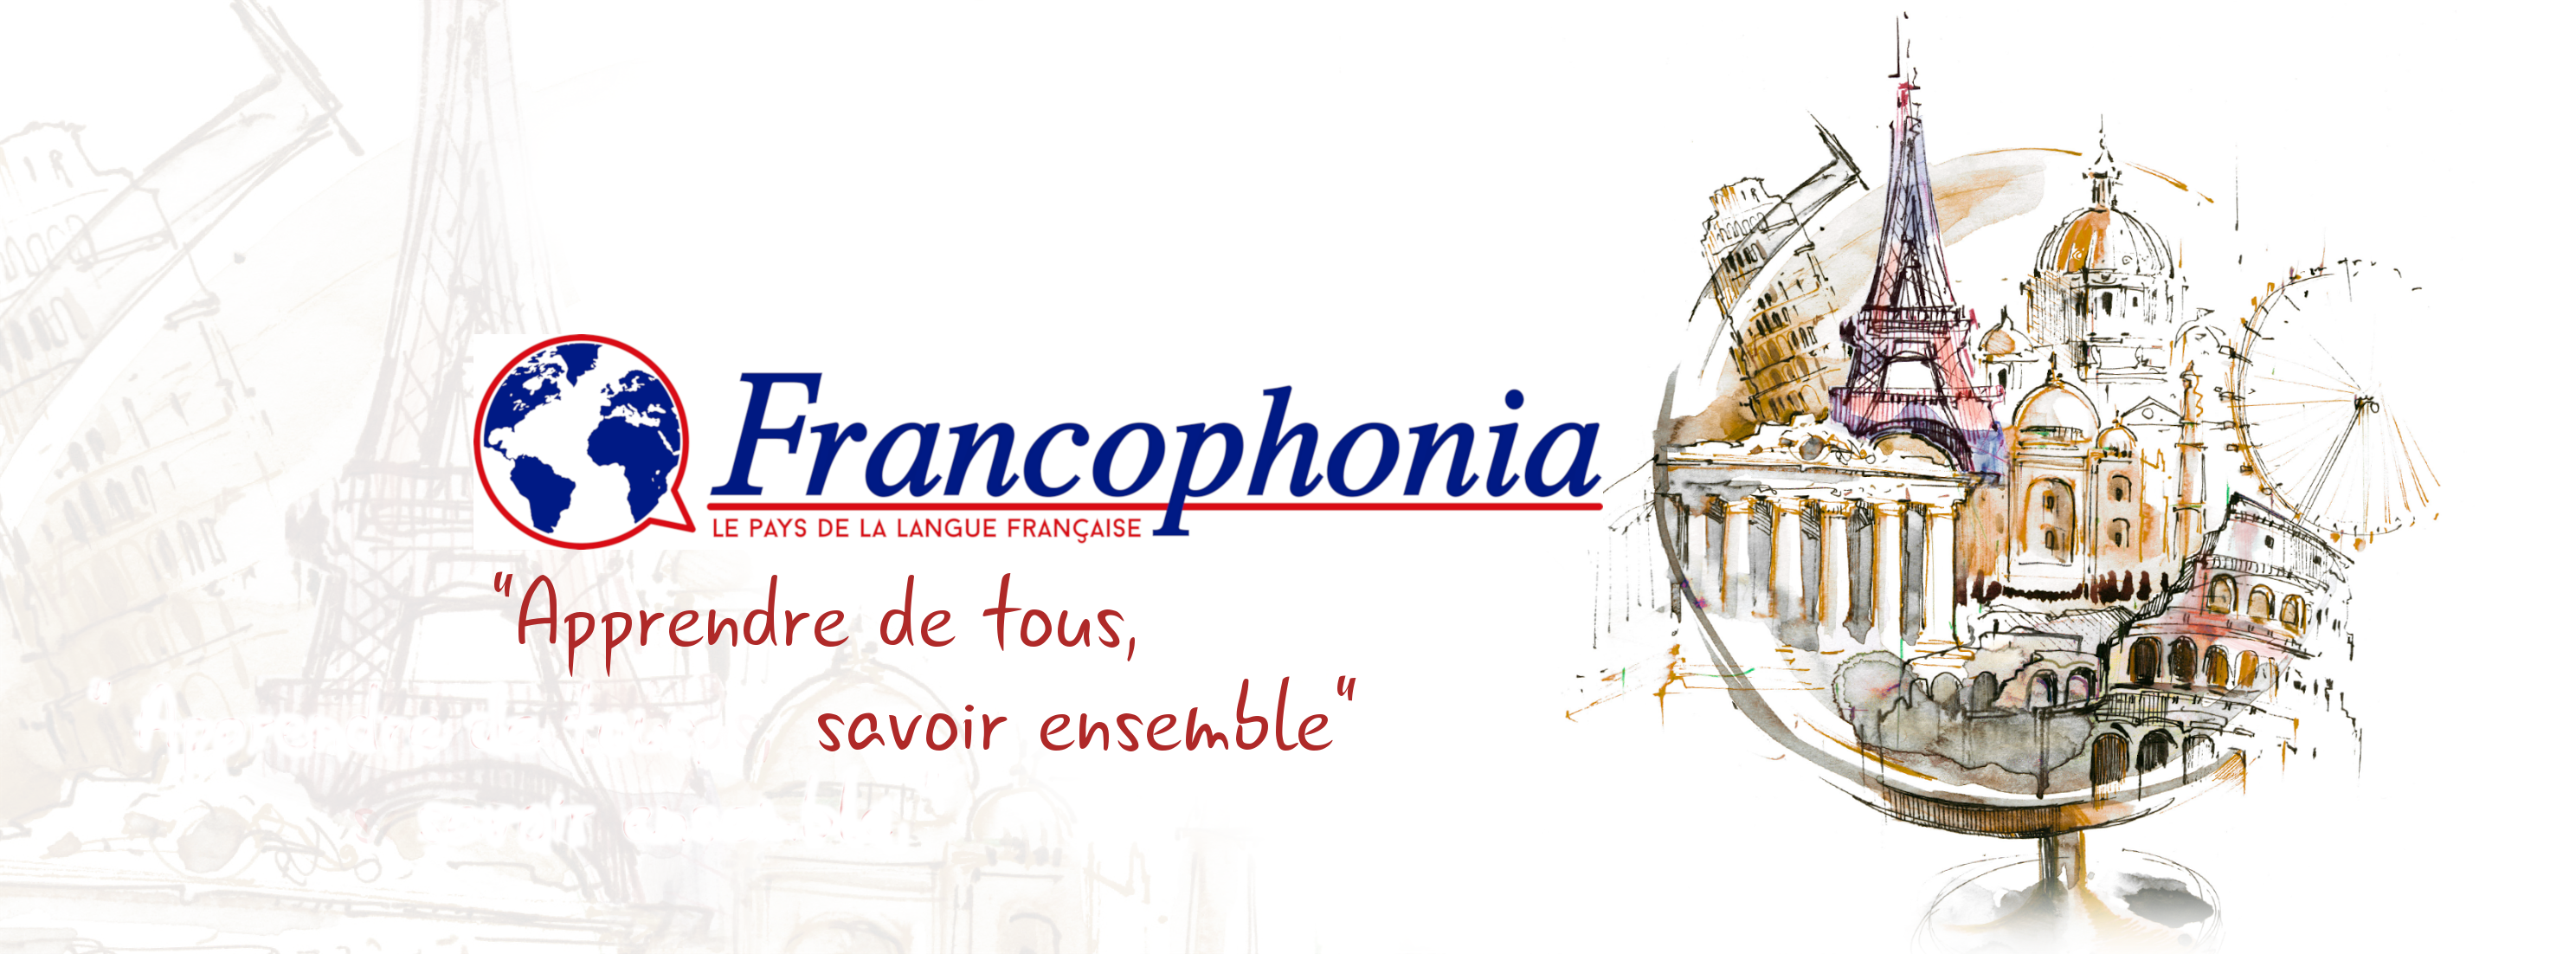 Francophonia : Financiez votre séjour grâce aux fonds Erasmus+